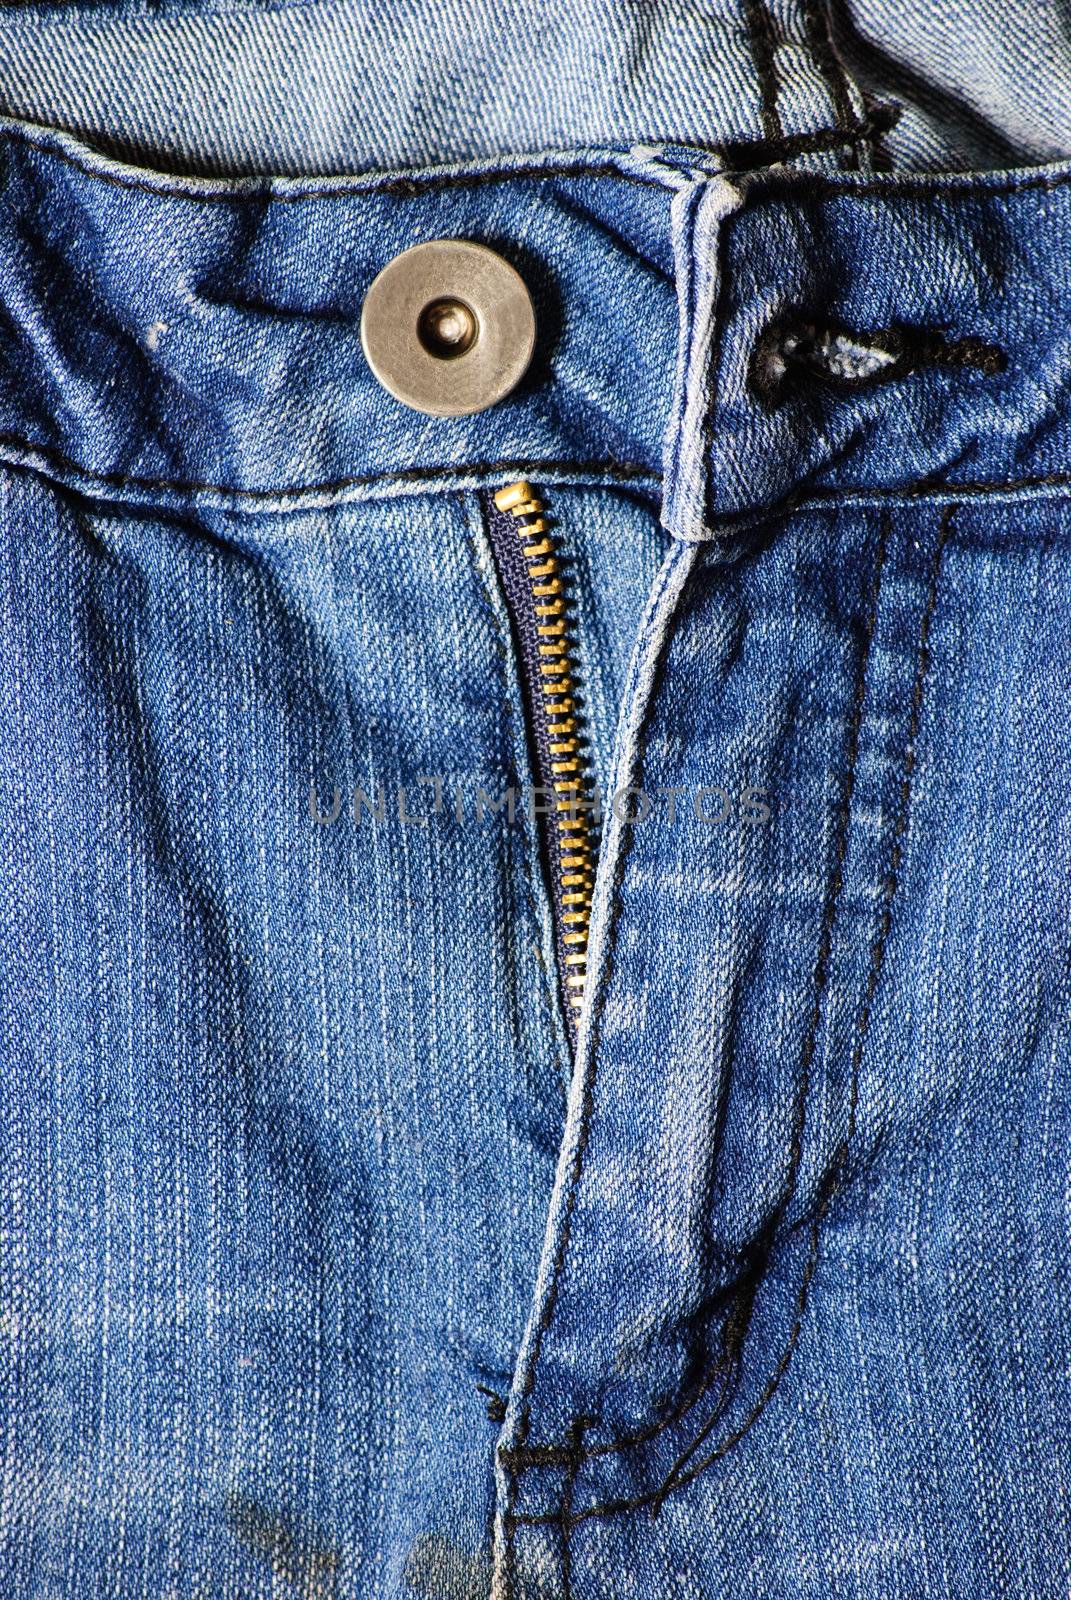 blue jeans detail